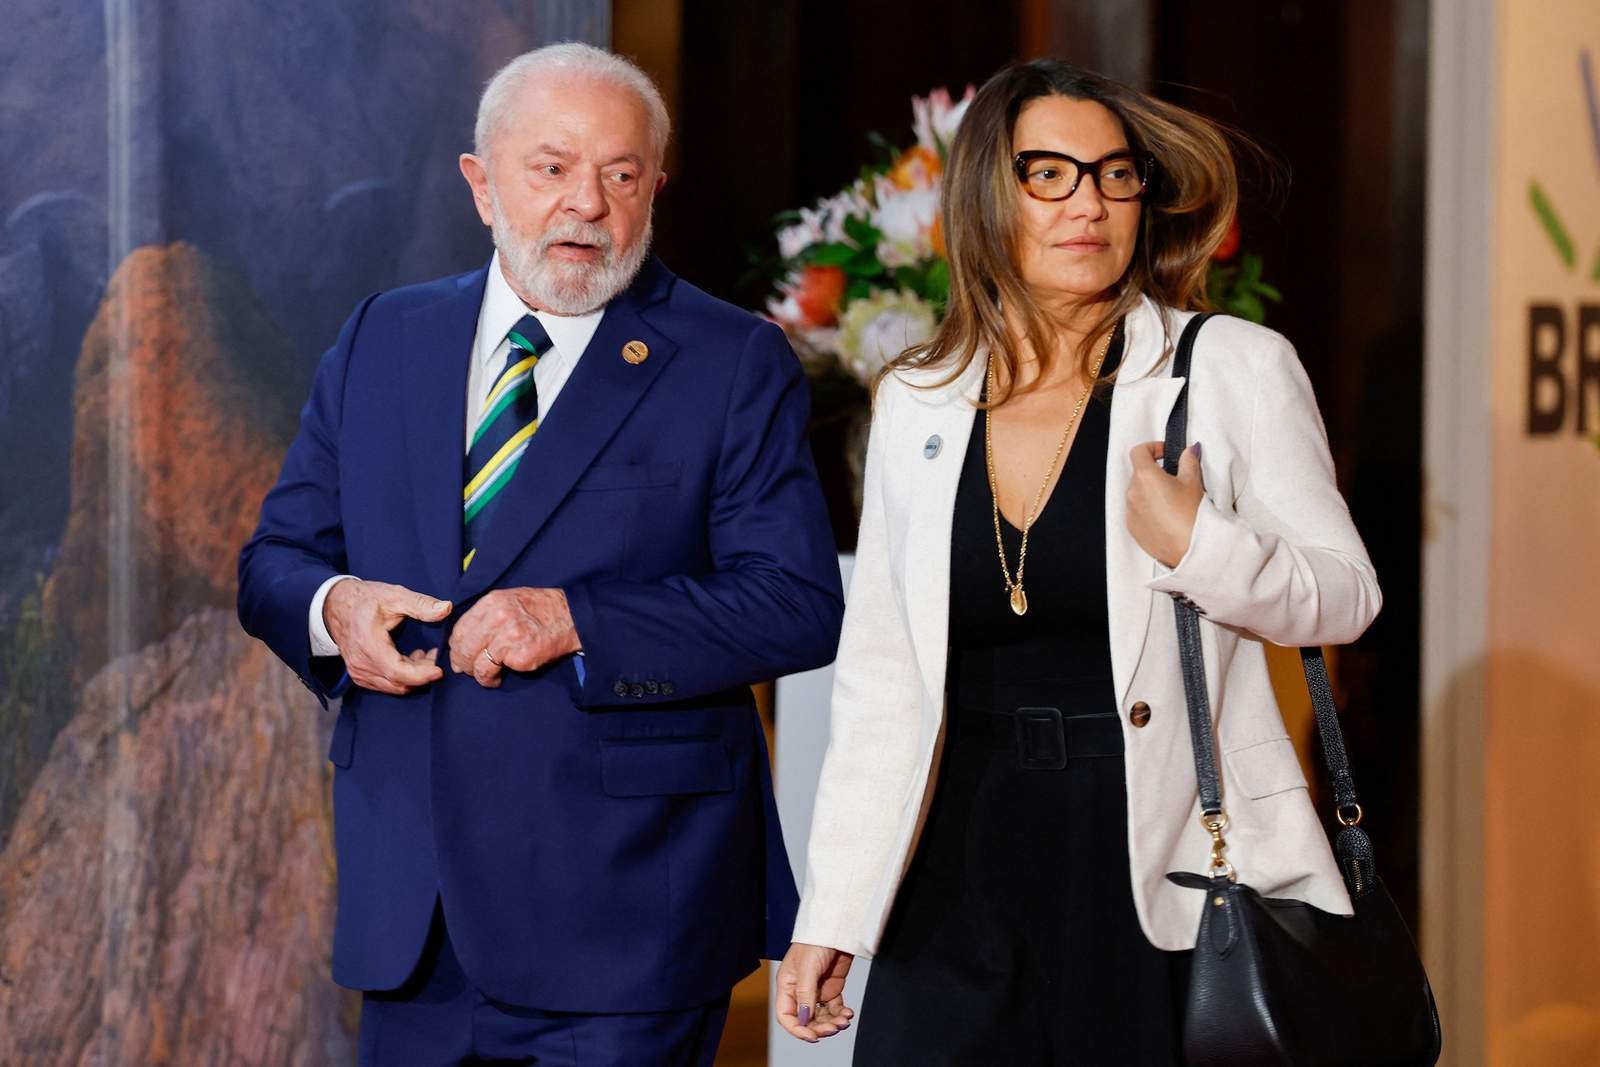 Presidente Lula e Janja chegam para reunião do BRICs — Foto: GIANLUIGI GUERCIA / POOL / AFP